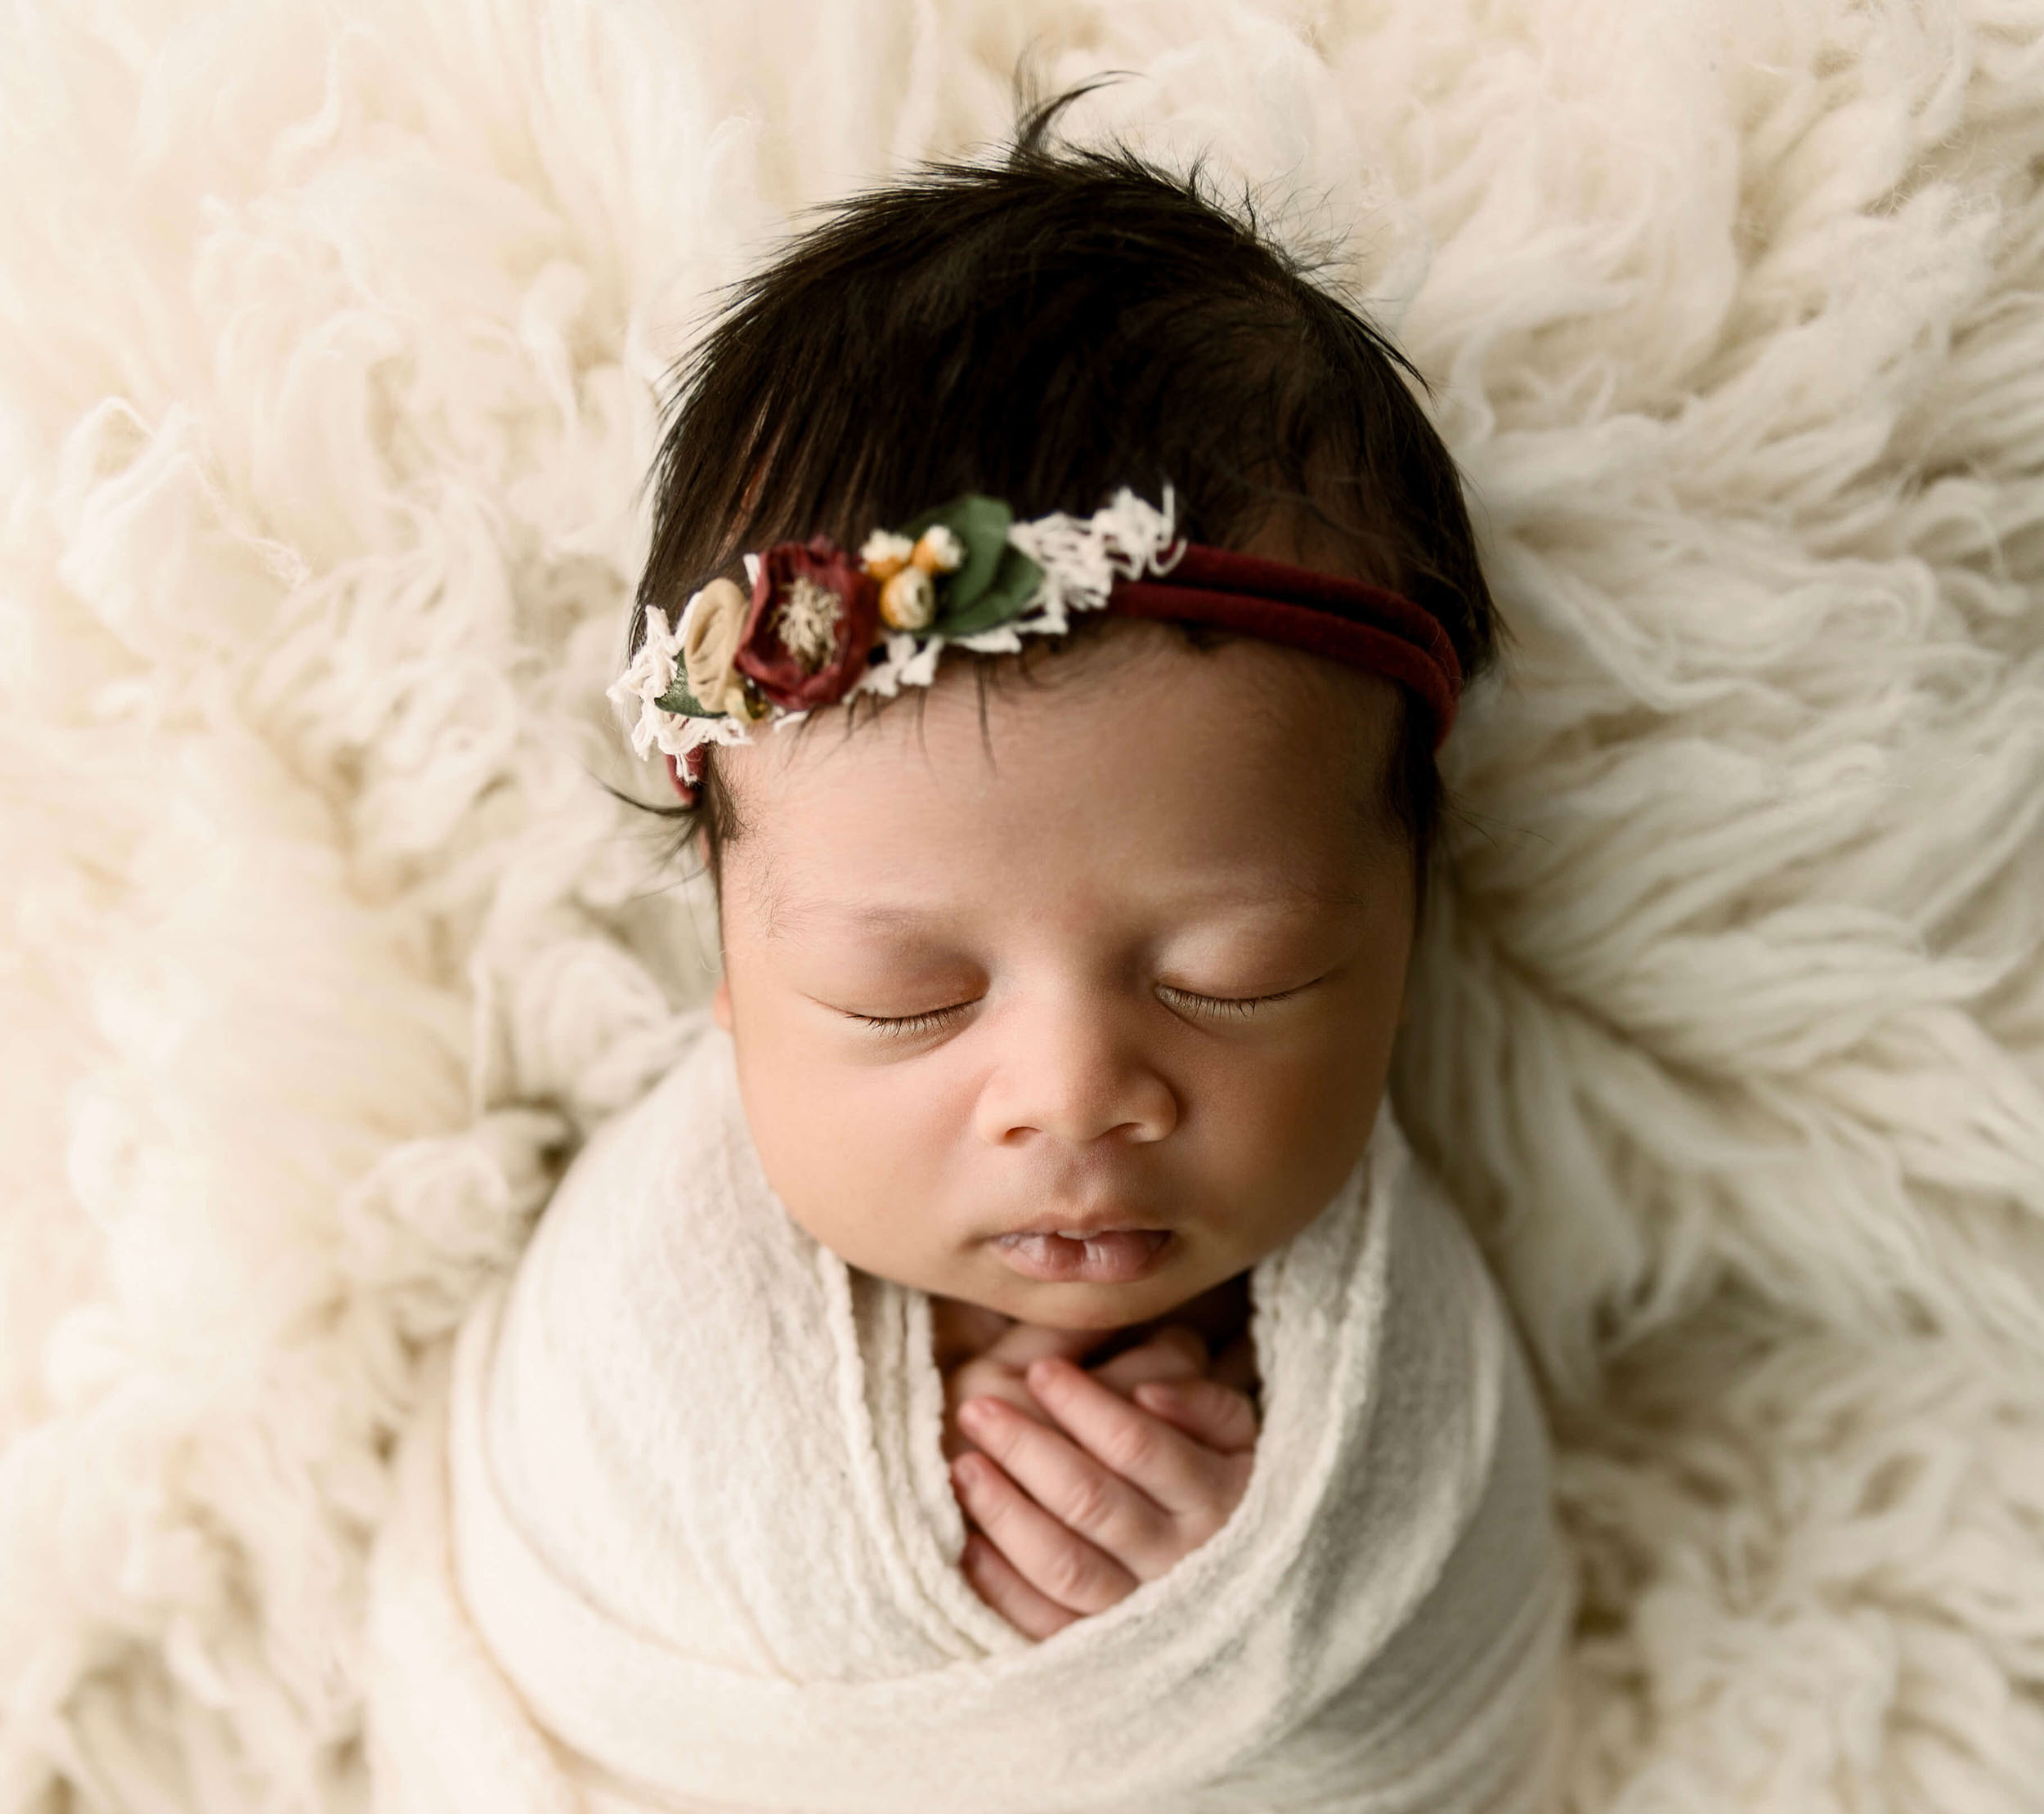 Newborn baby girl with a beautiful headband laying on flokati fur